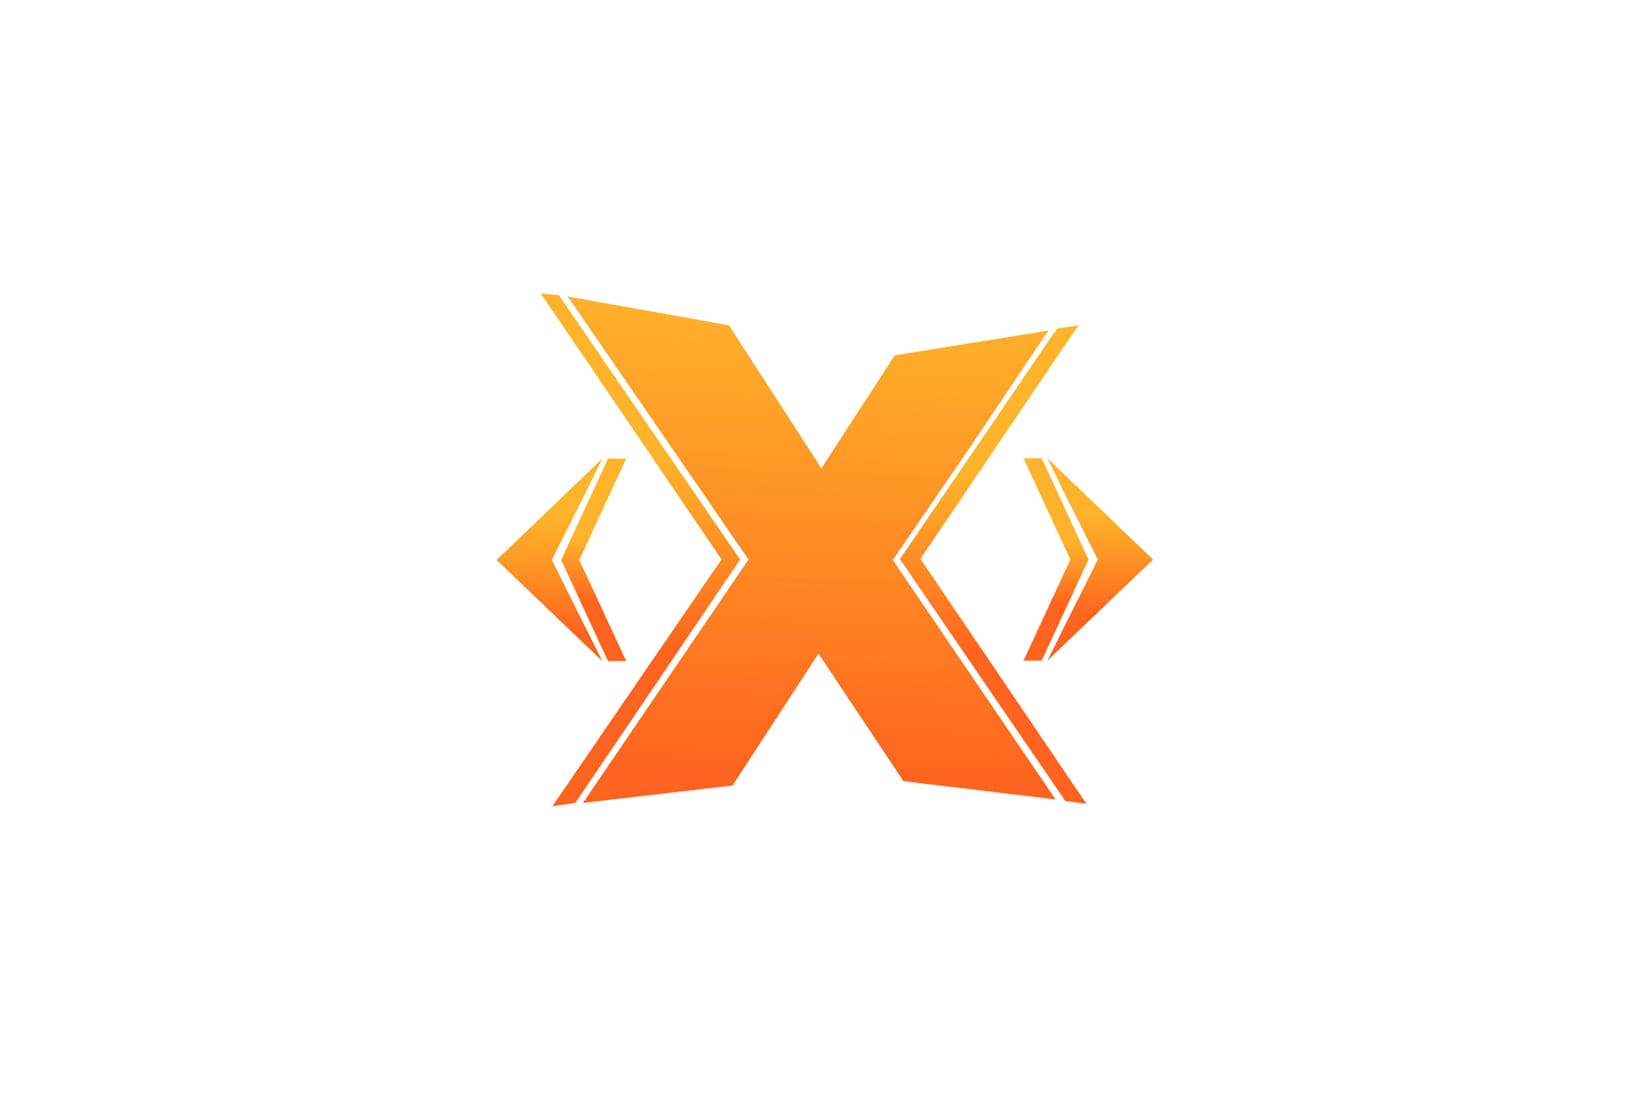 Аватарка икса. Логотип x. Табак Икс. Икс картинка. 3 Икса.